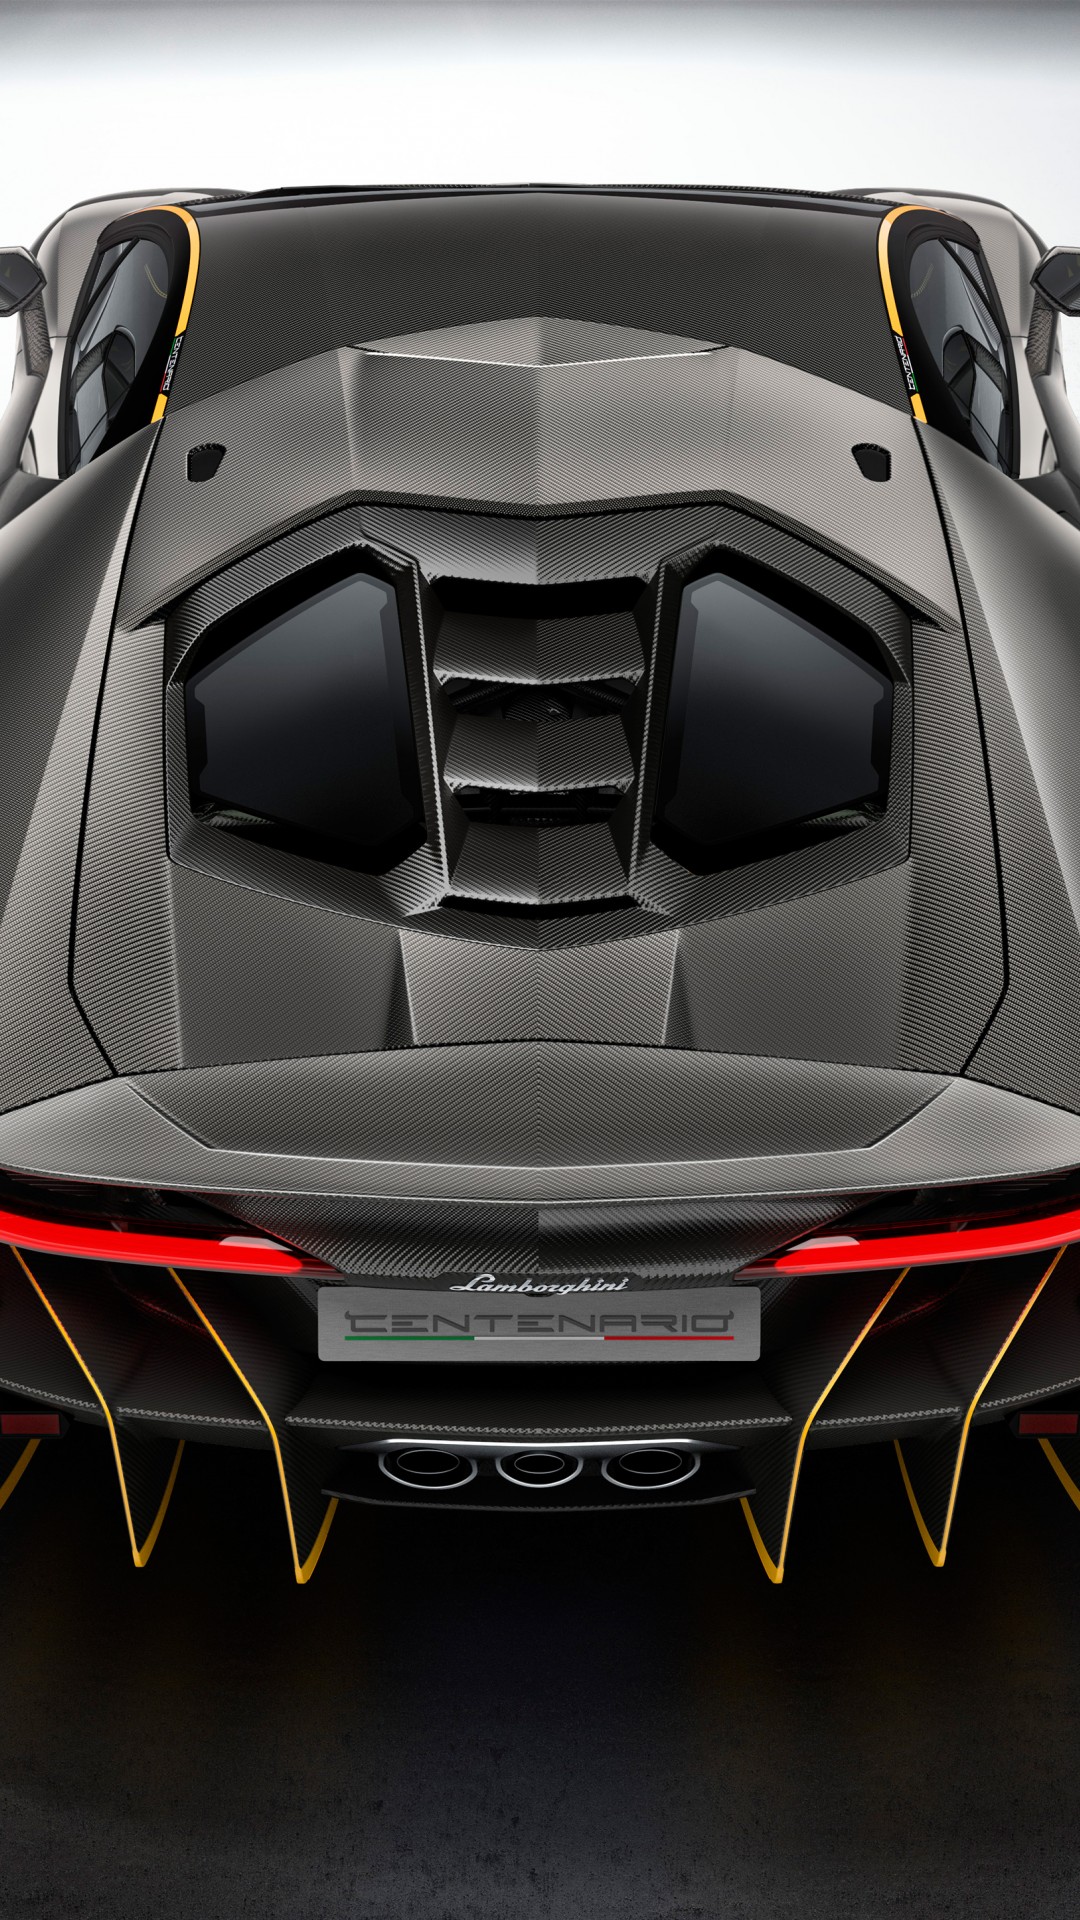 2016 Lamborghini Centenario, вид сзади 1080x1920